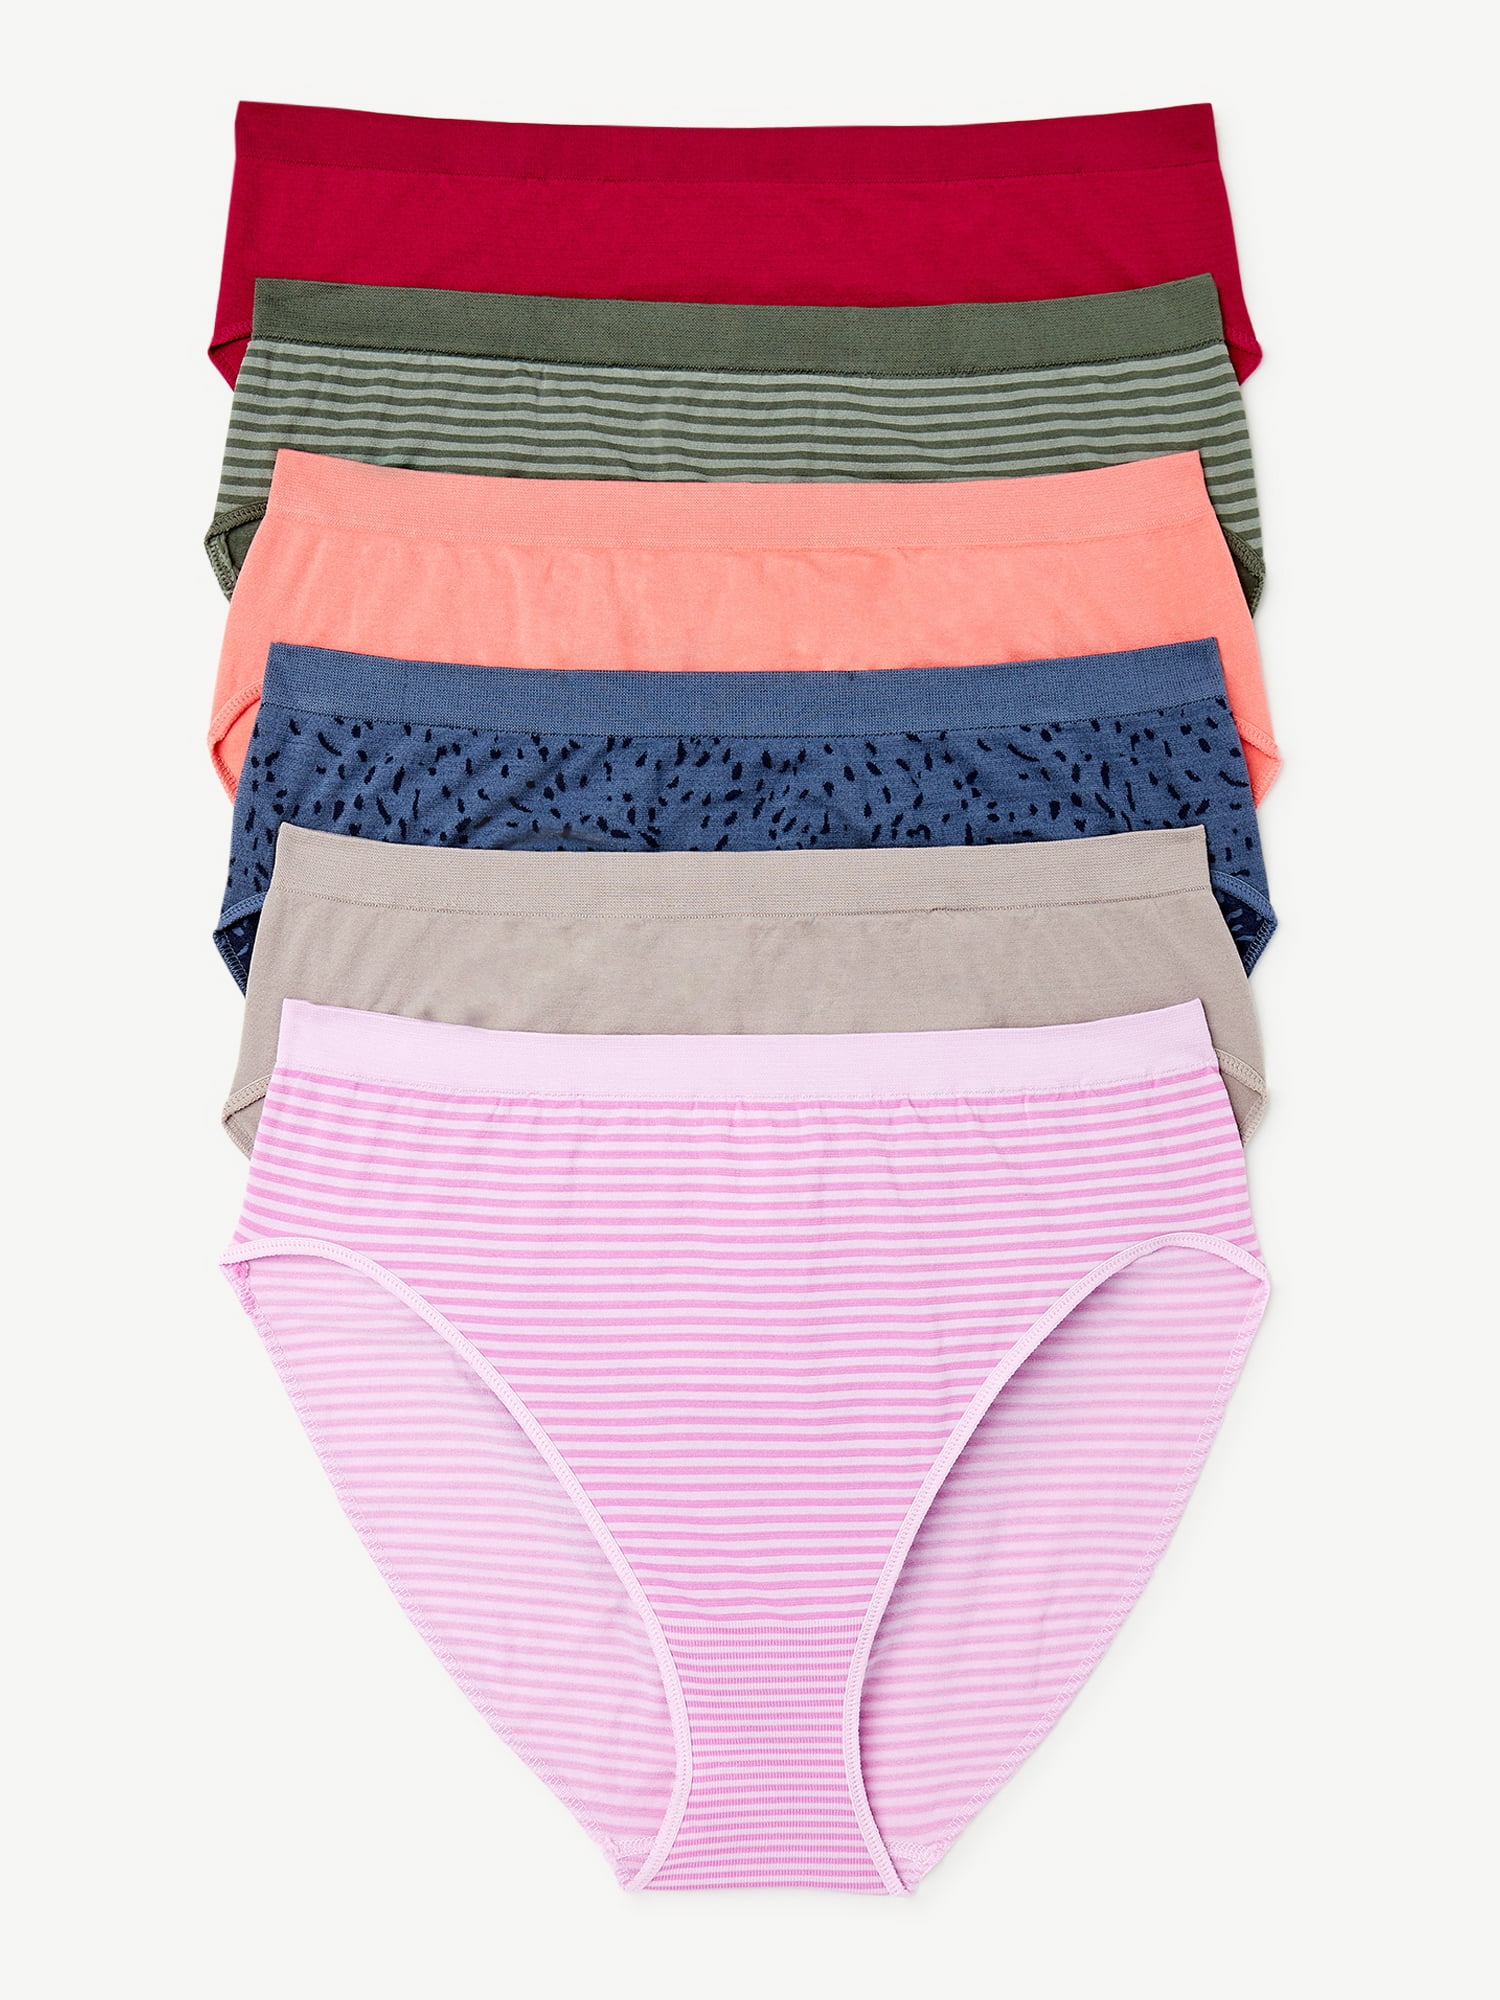 Joyspun Women's Seamless Hi Cut Panties, 6-Pack, Sizes XS to 3XL